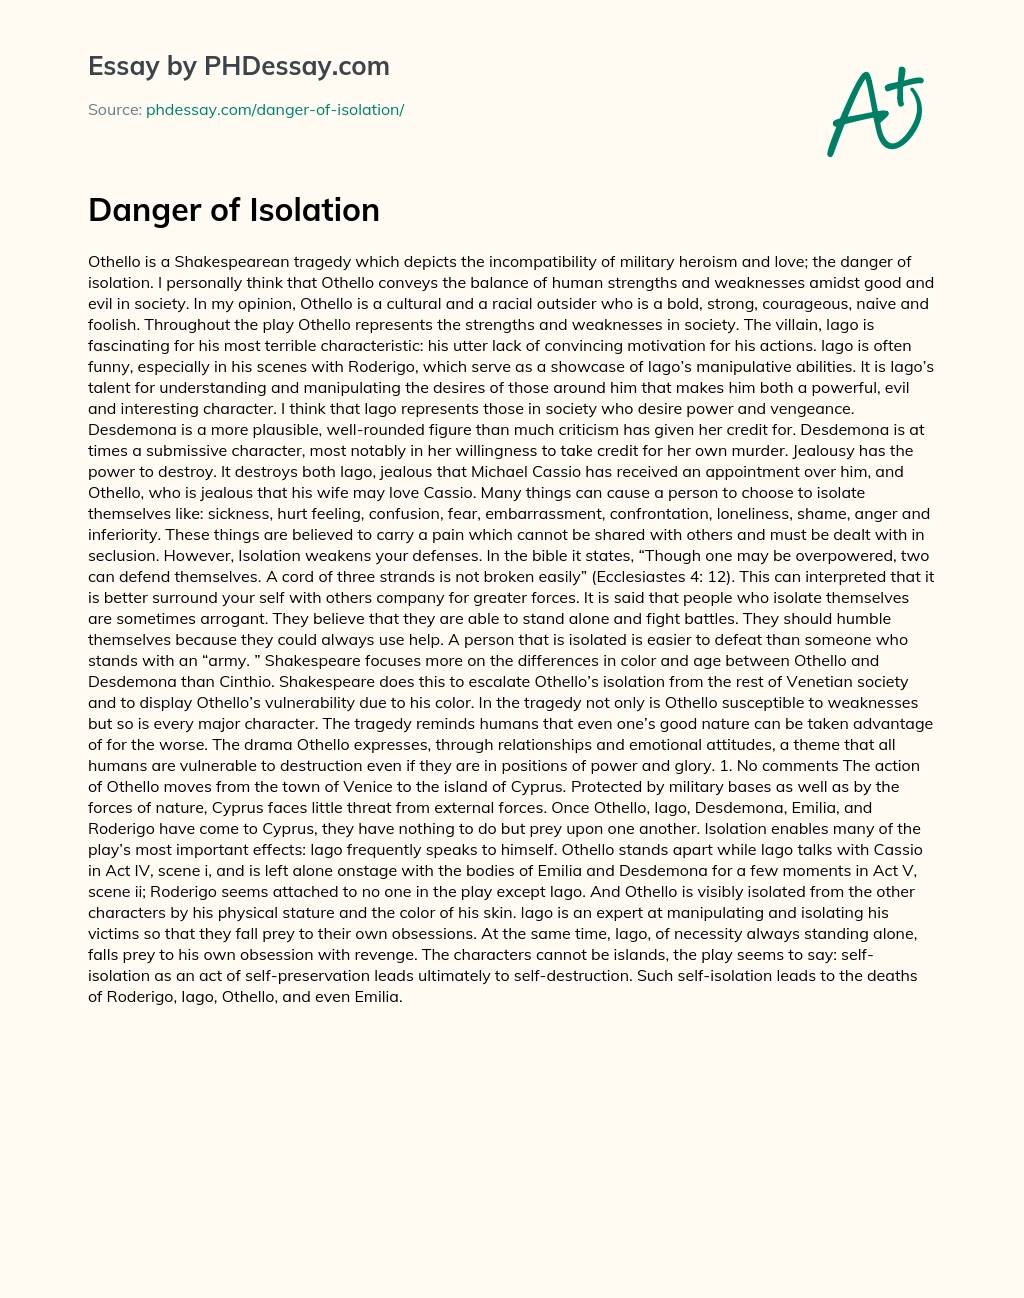 Danger of Isolation essay